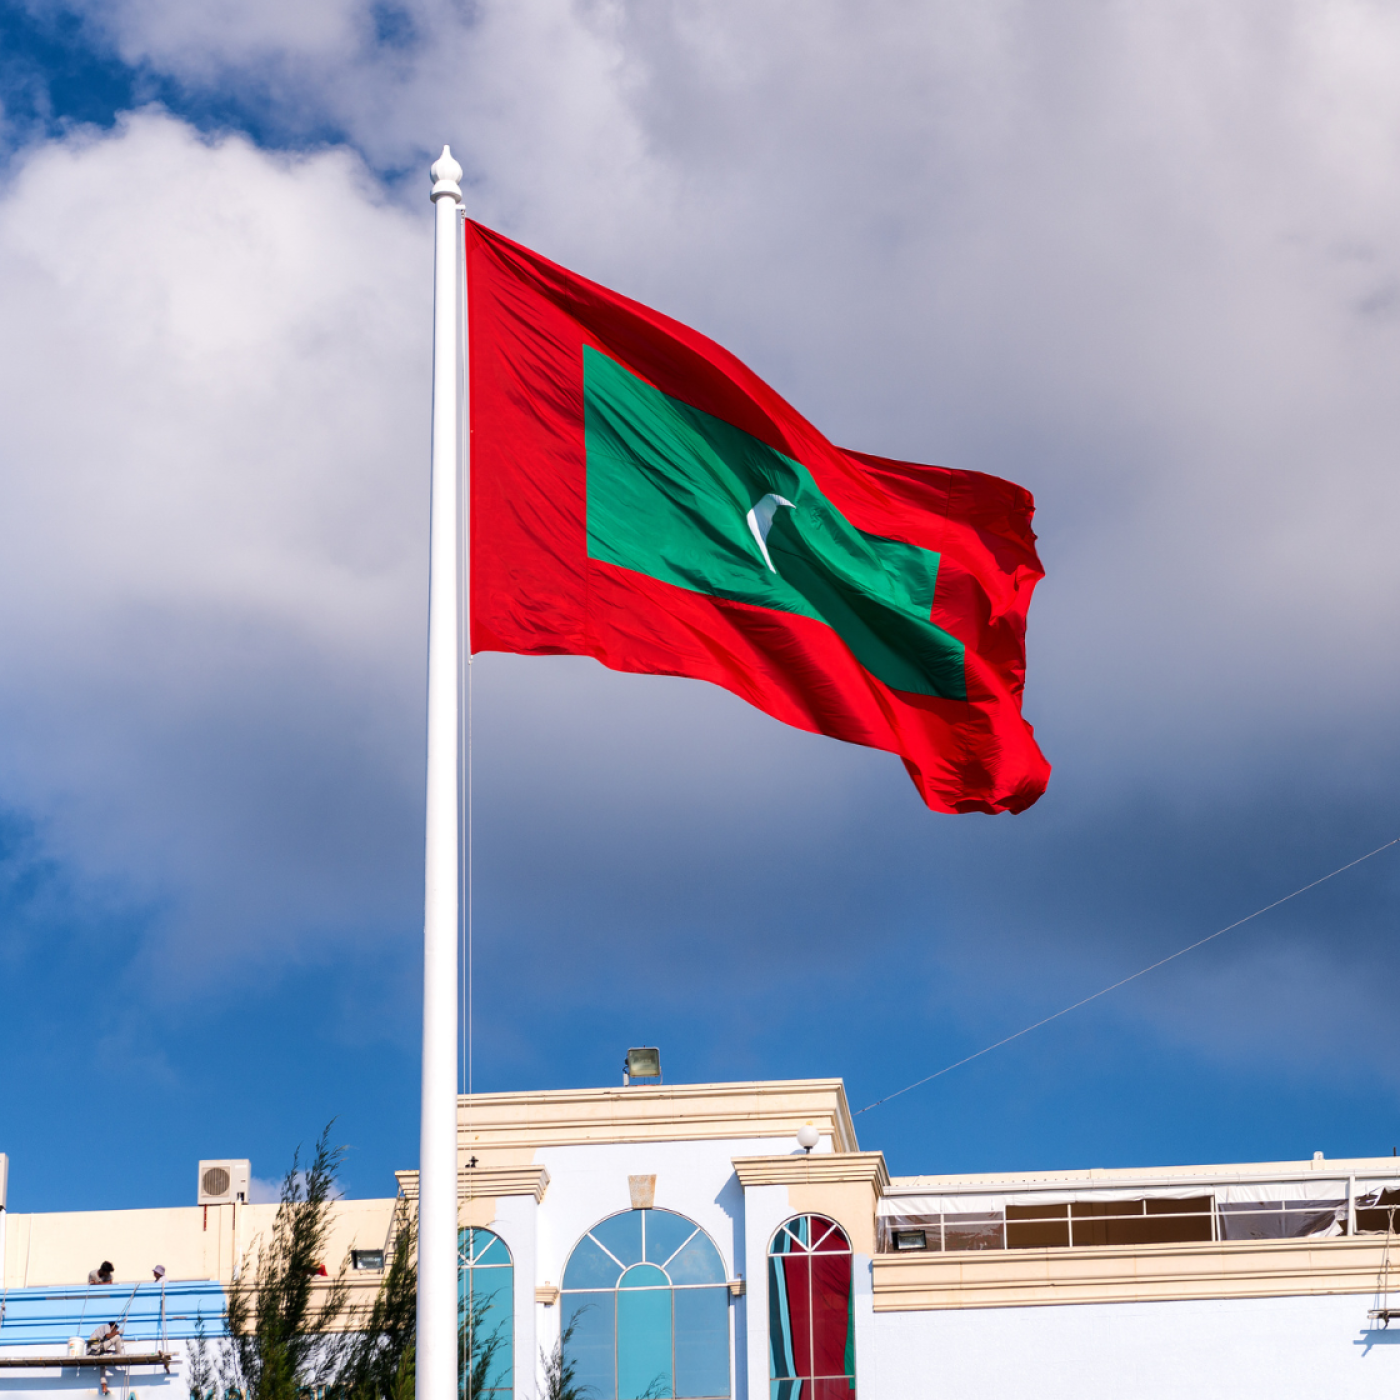 Maldives Flag in City Square, Male